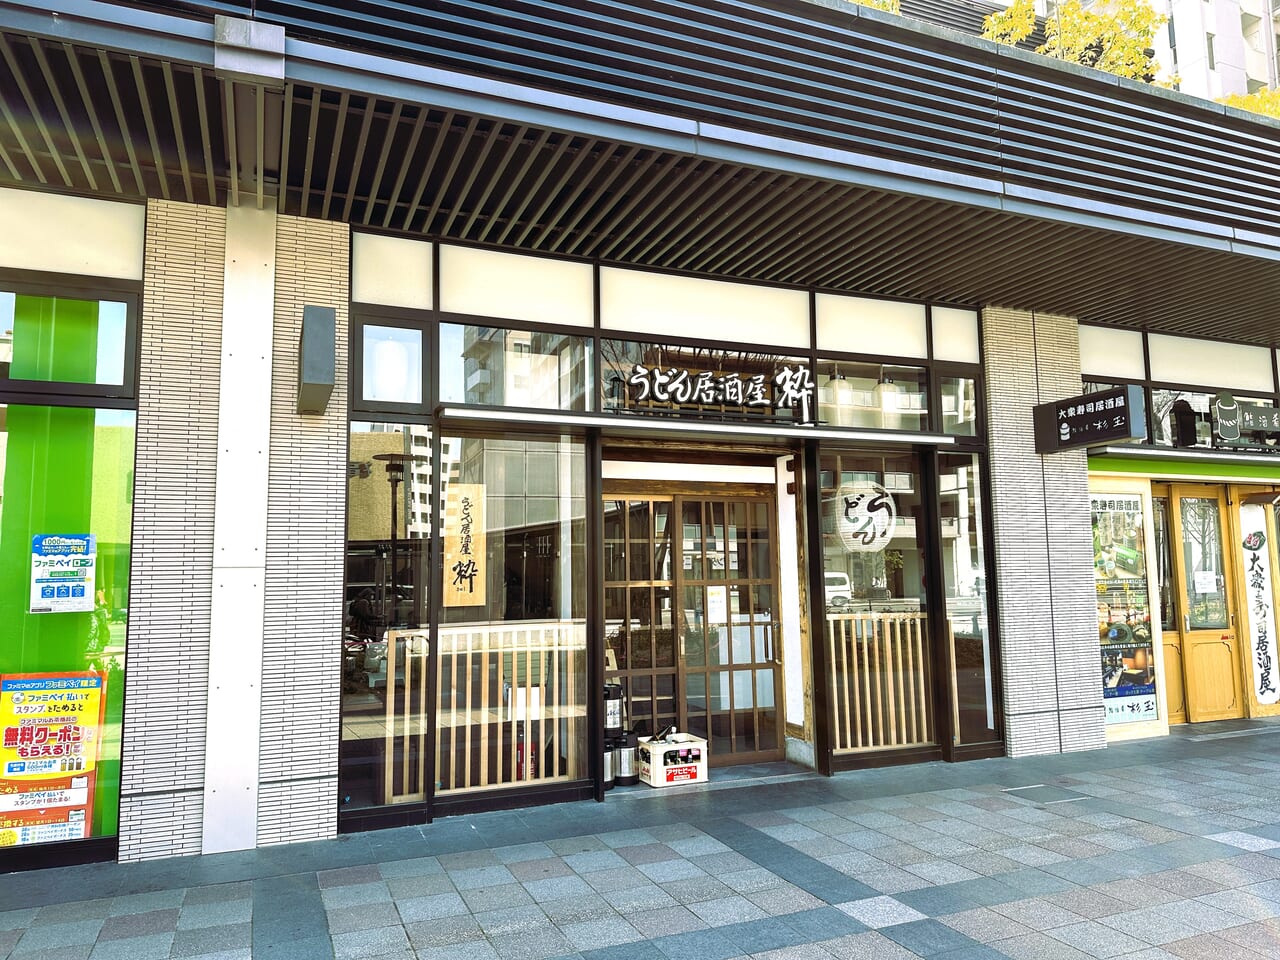 『 うどん居酒屋 粋 六本松店 』が、３月２０日閉店しました。